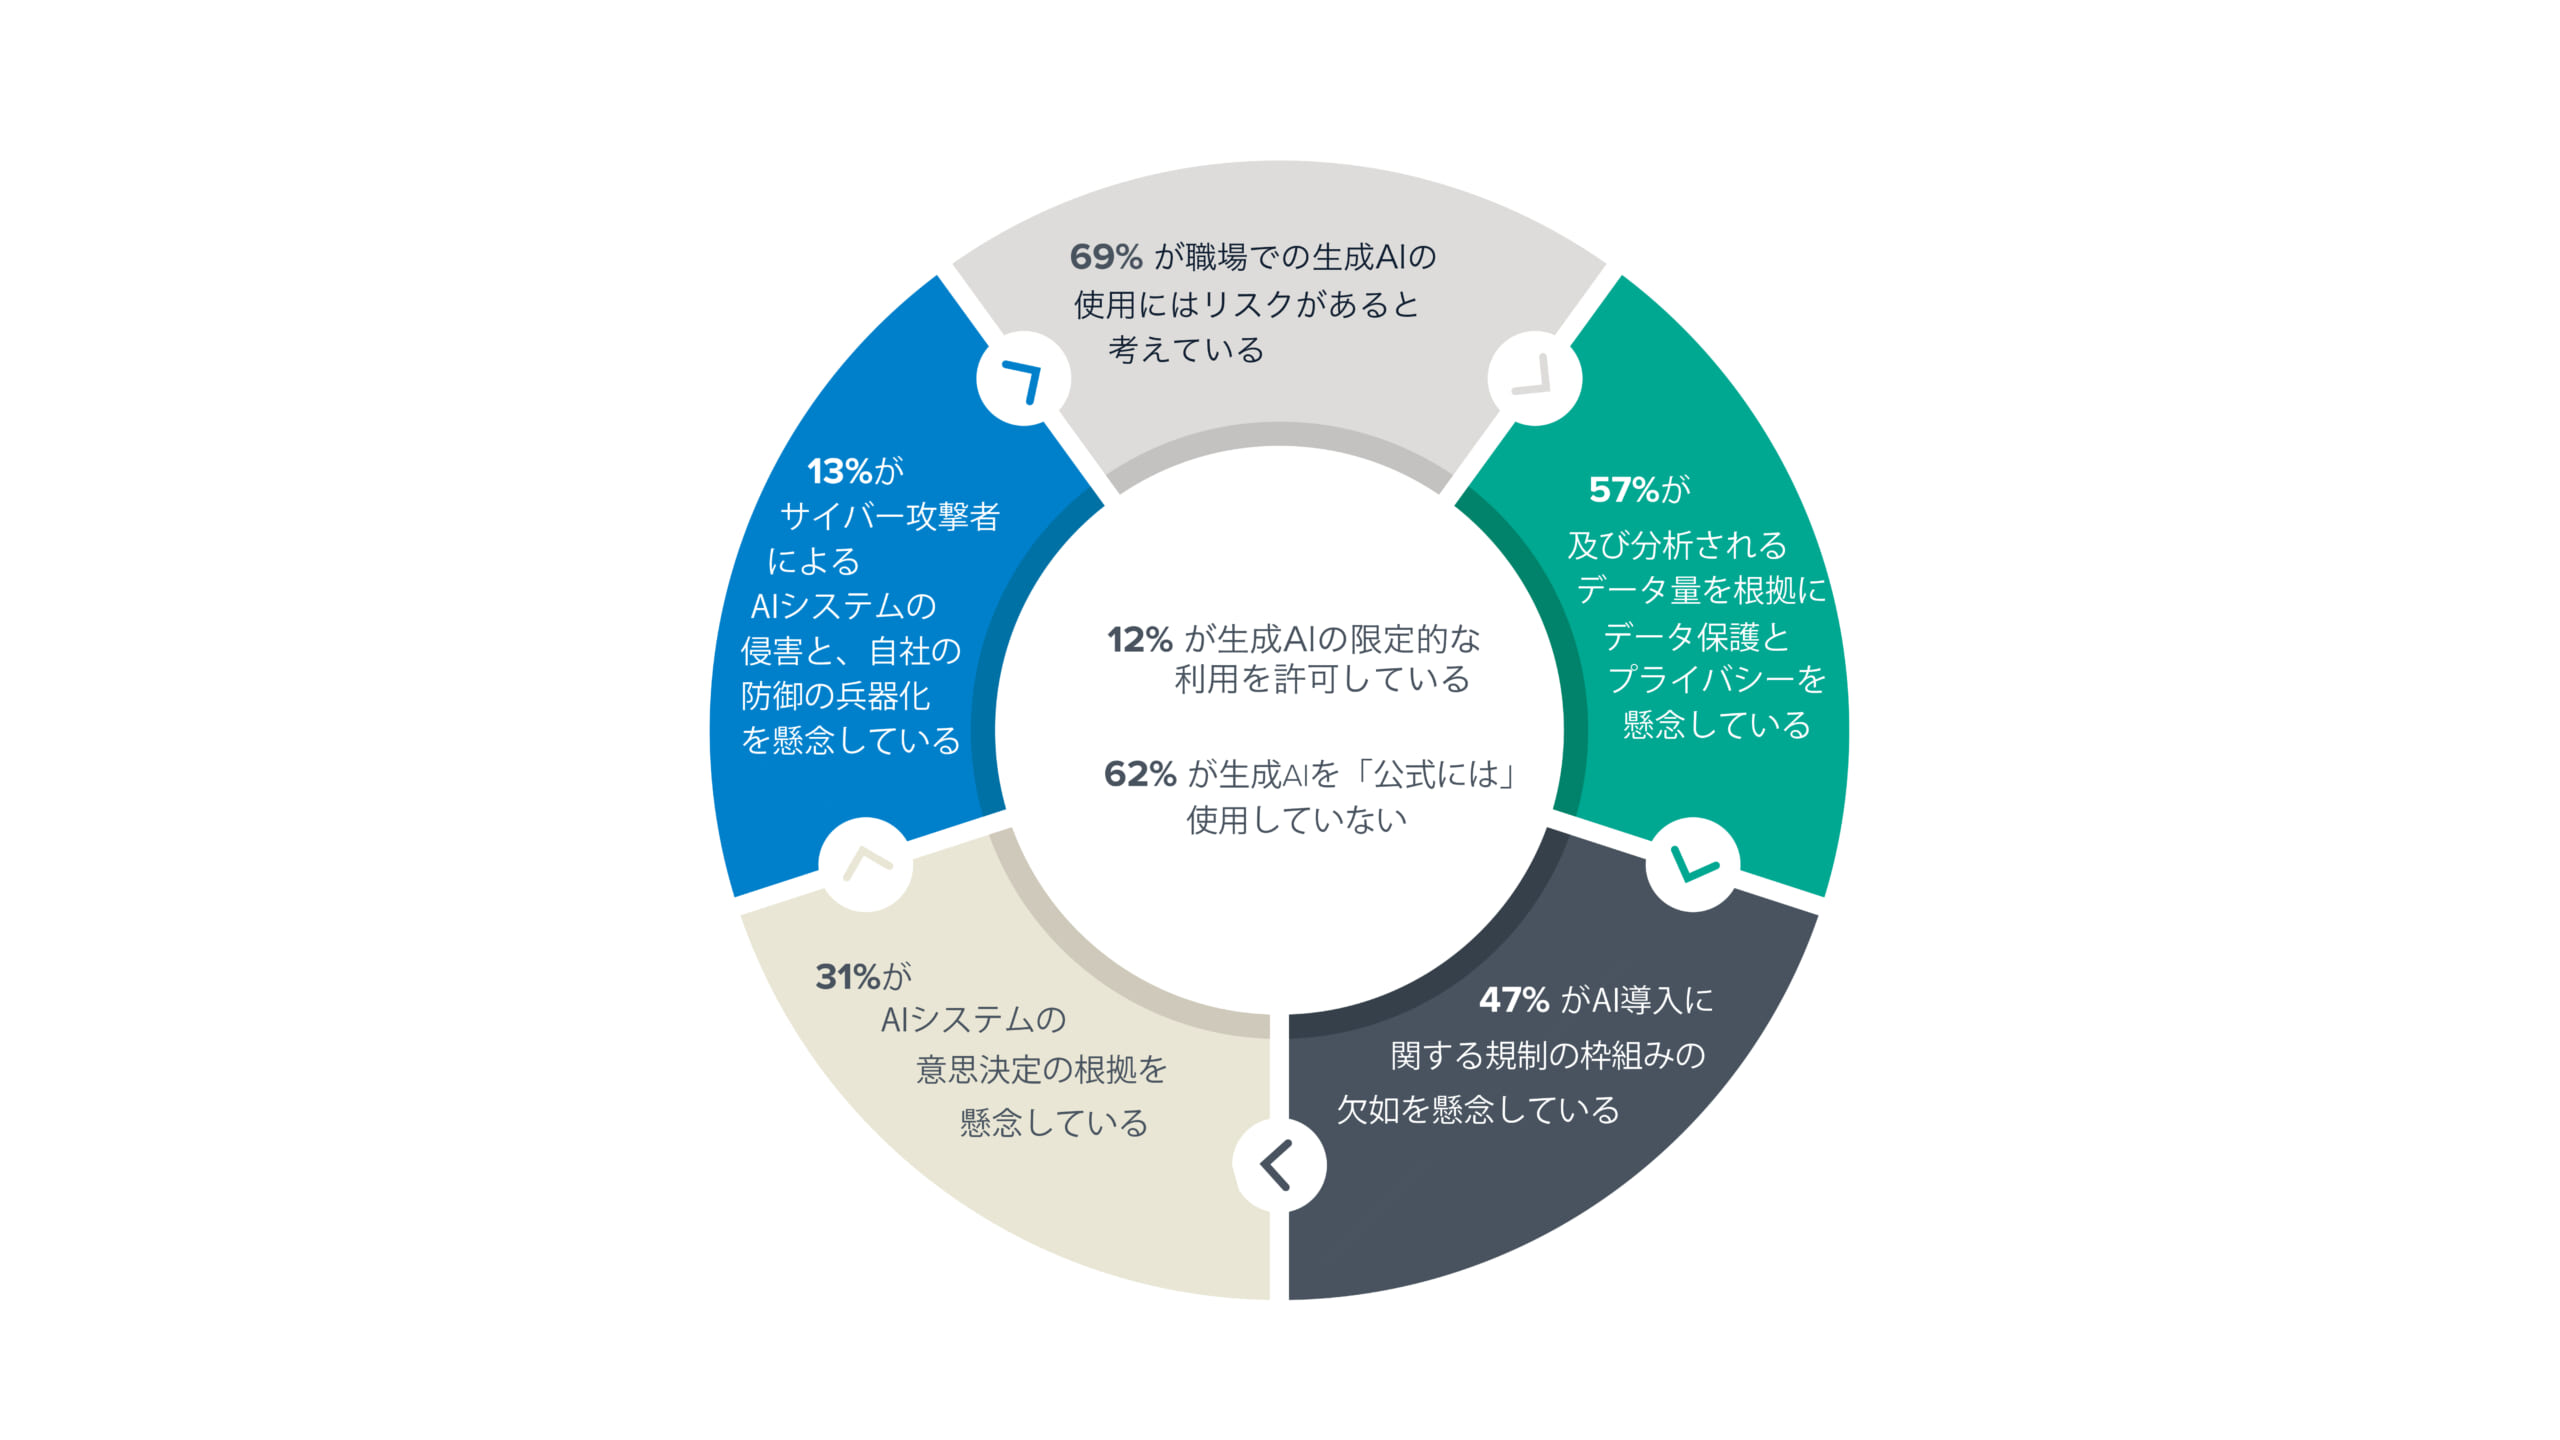 日本の中小企業はAIに前向きだが、セキュリティや知識、スキルの乖離を懸念 ―  バラクーダ、日本国内中小企業のAIとセキュリティに関する調査結果を発表 のページ写真 1